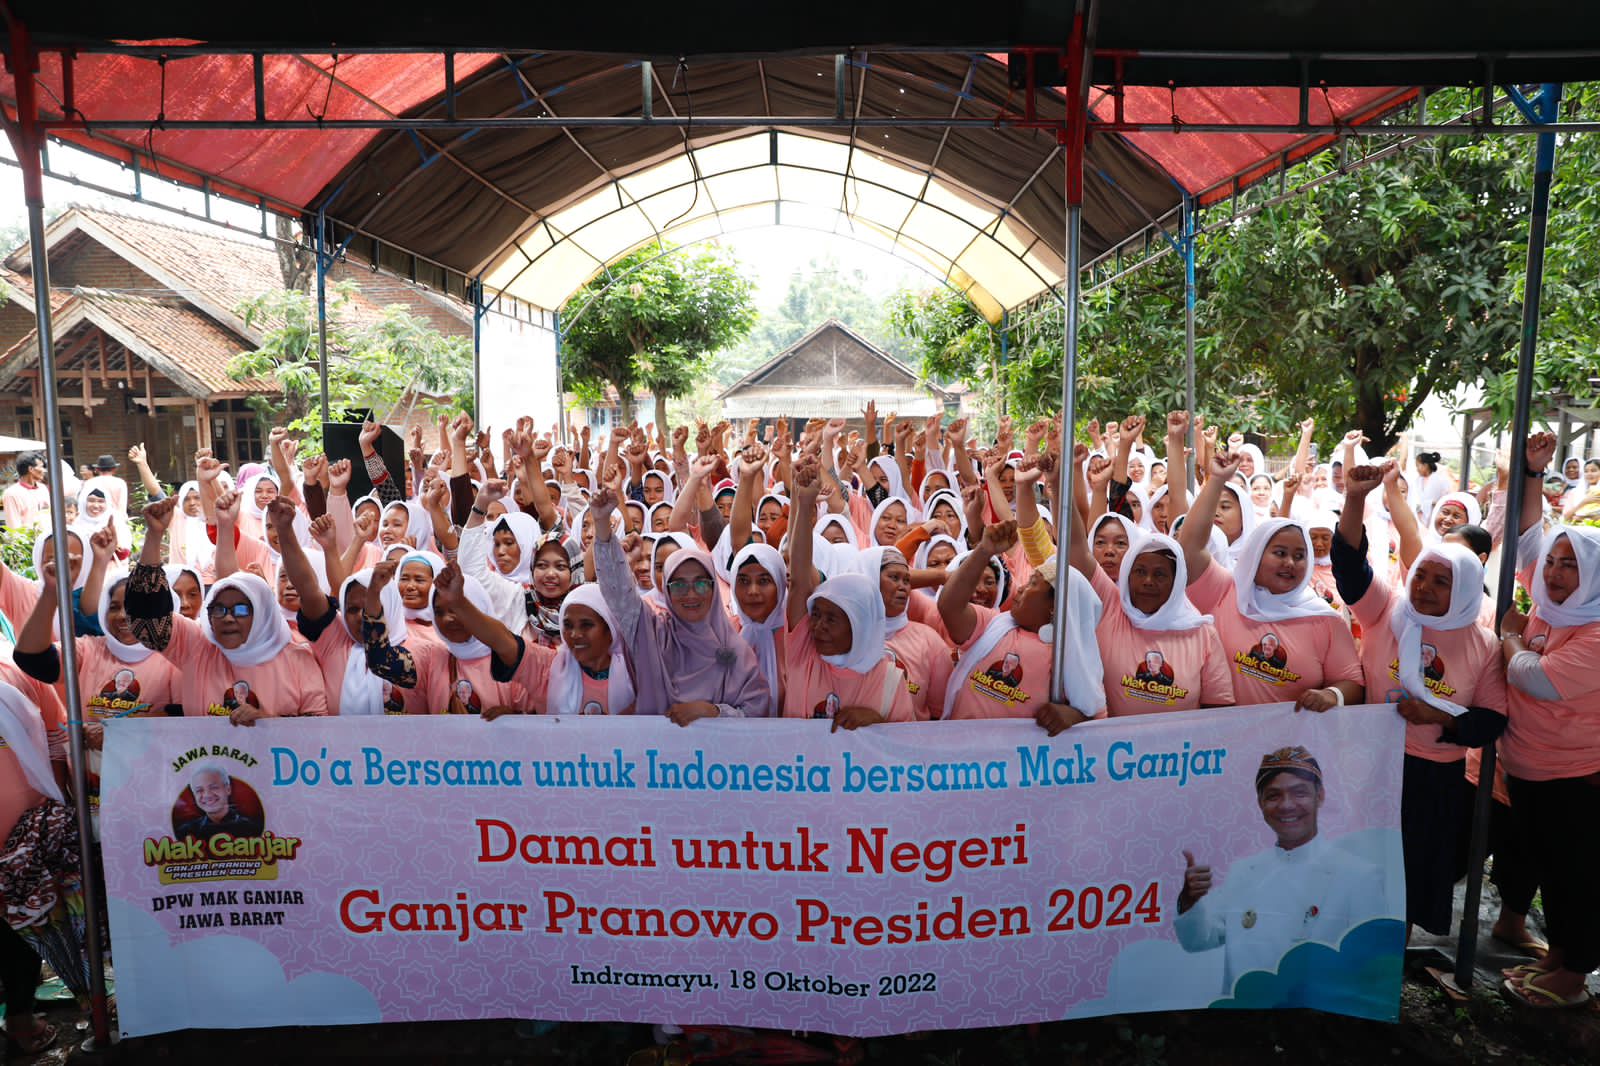 Ciptakan Pengarusutamaan Gender, 500 Emak-Emak di Indramayu Dorong Ganjar Pranowo Jadi Presiden 2024